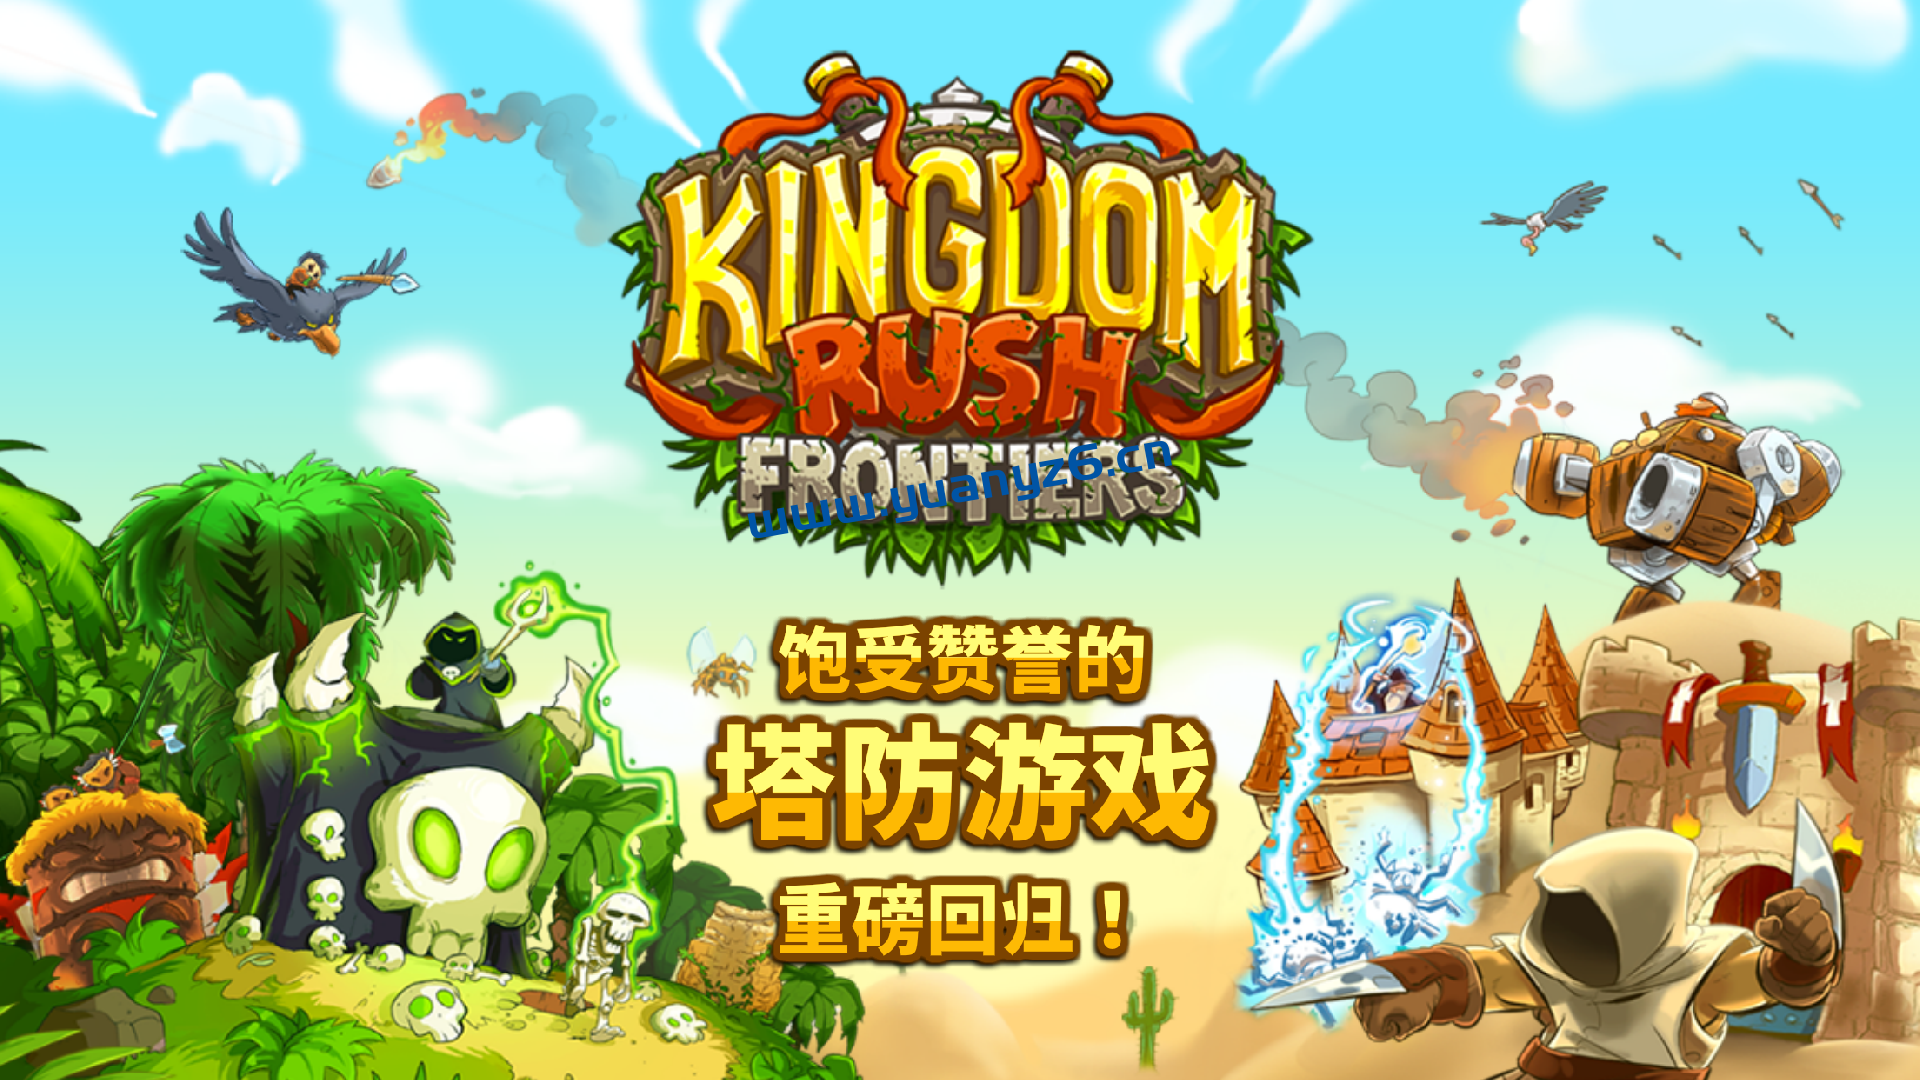 王国保卫战:前线 for Mac v1.2 中文版 Kingdom Rush Frontiers 苹果电脑